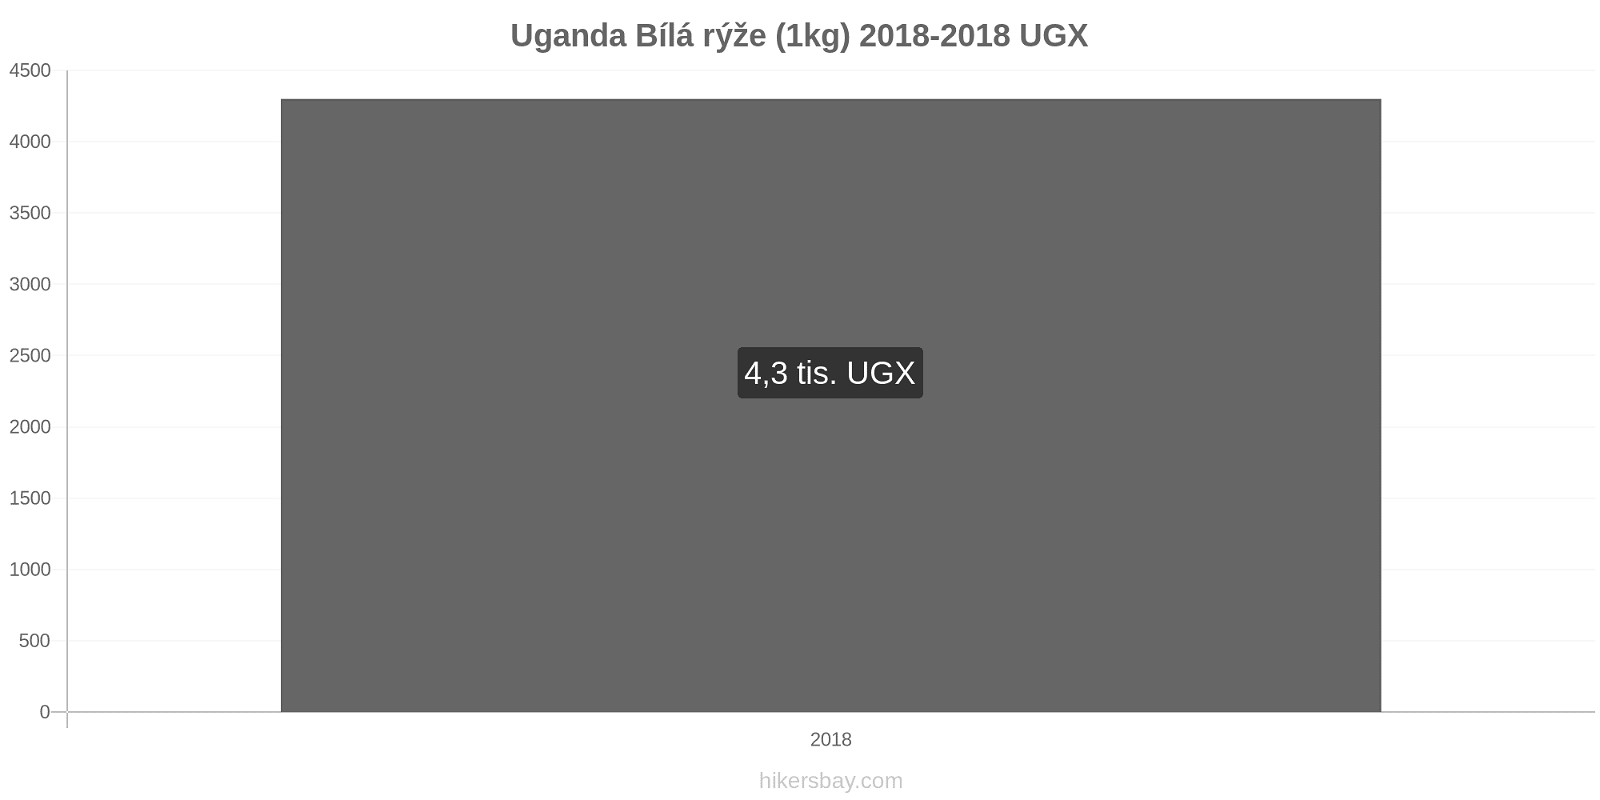 Uganda změny cen Kilo bílé rýže hikersbay.com